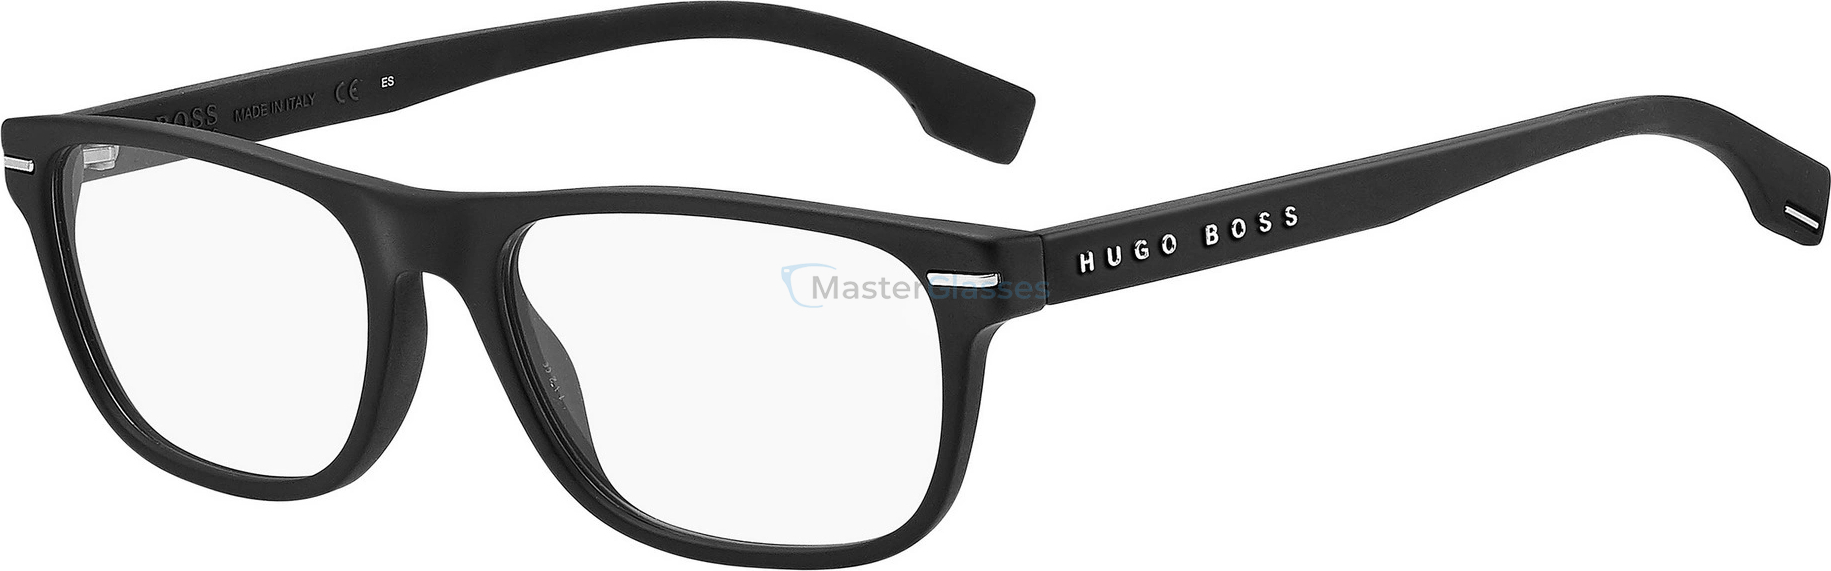  Hugo Boss 1323 003 54